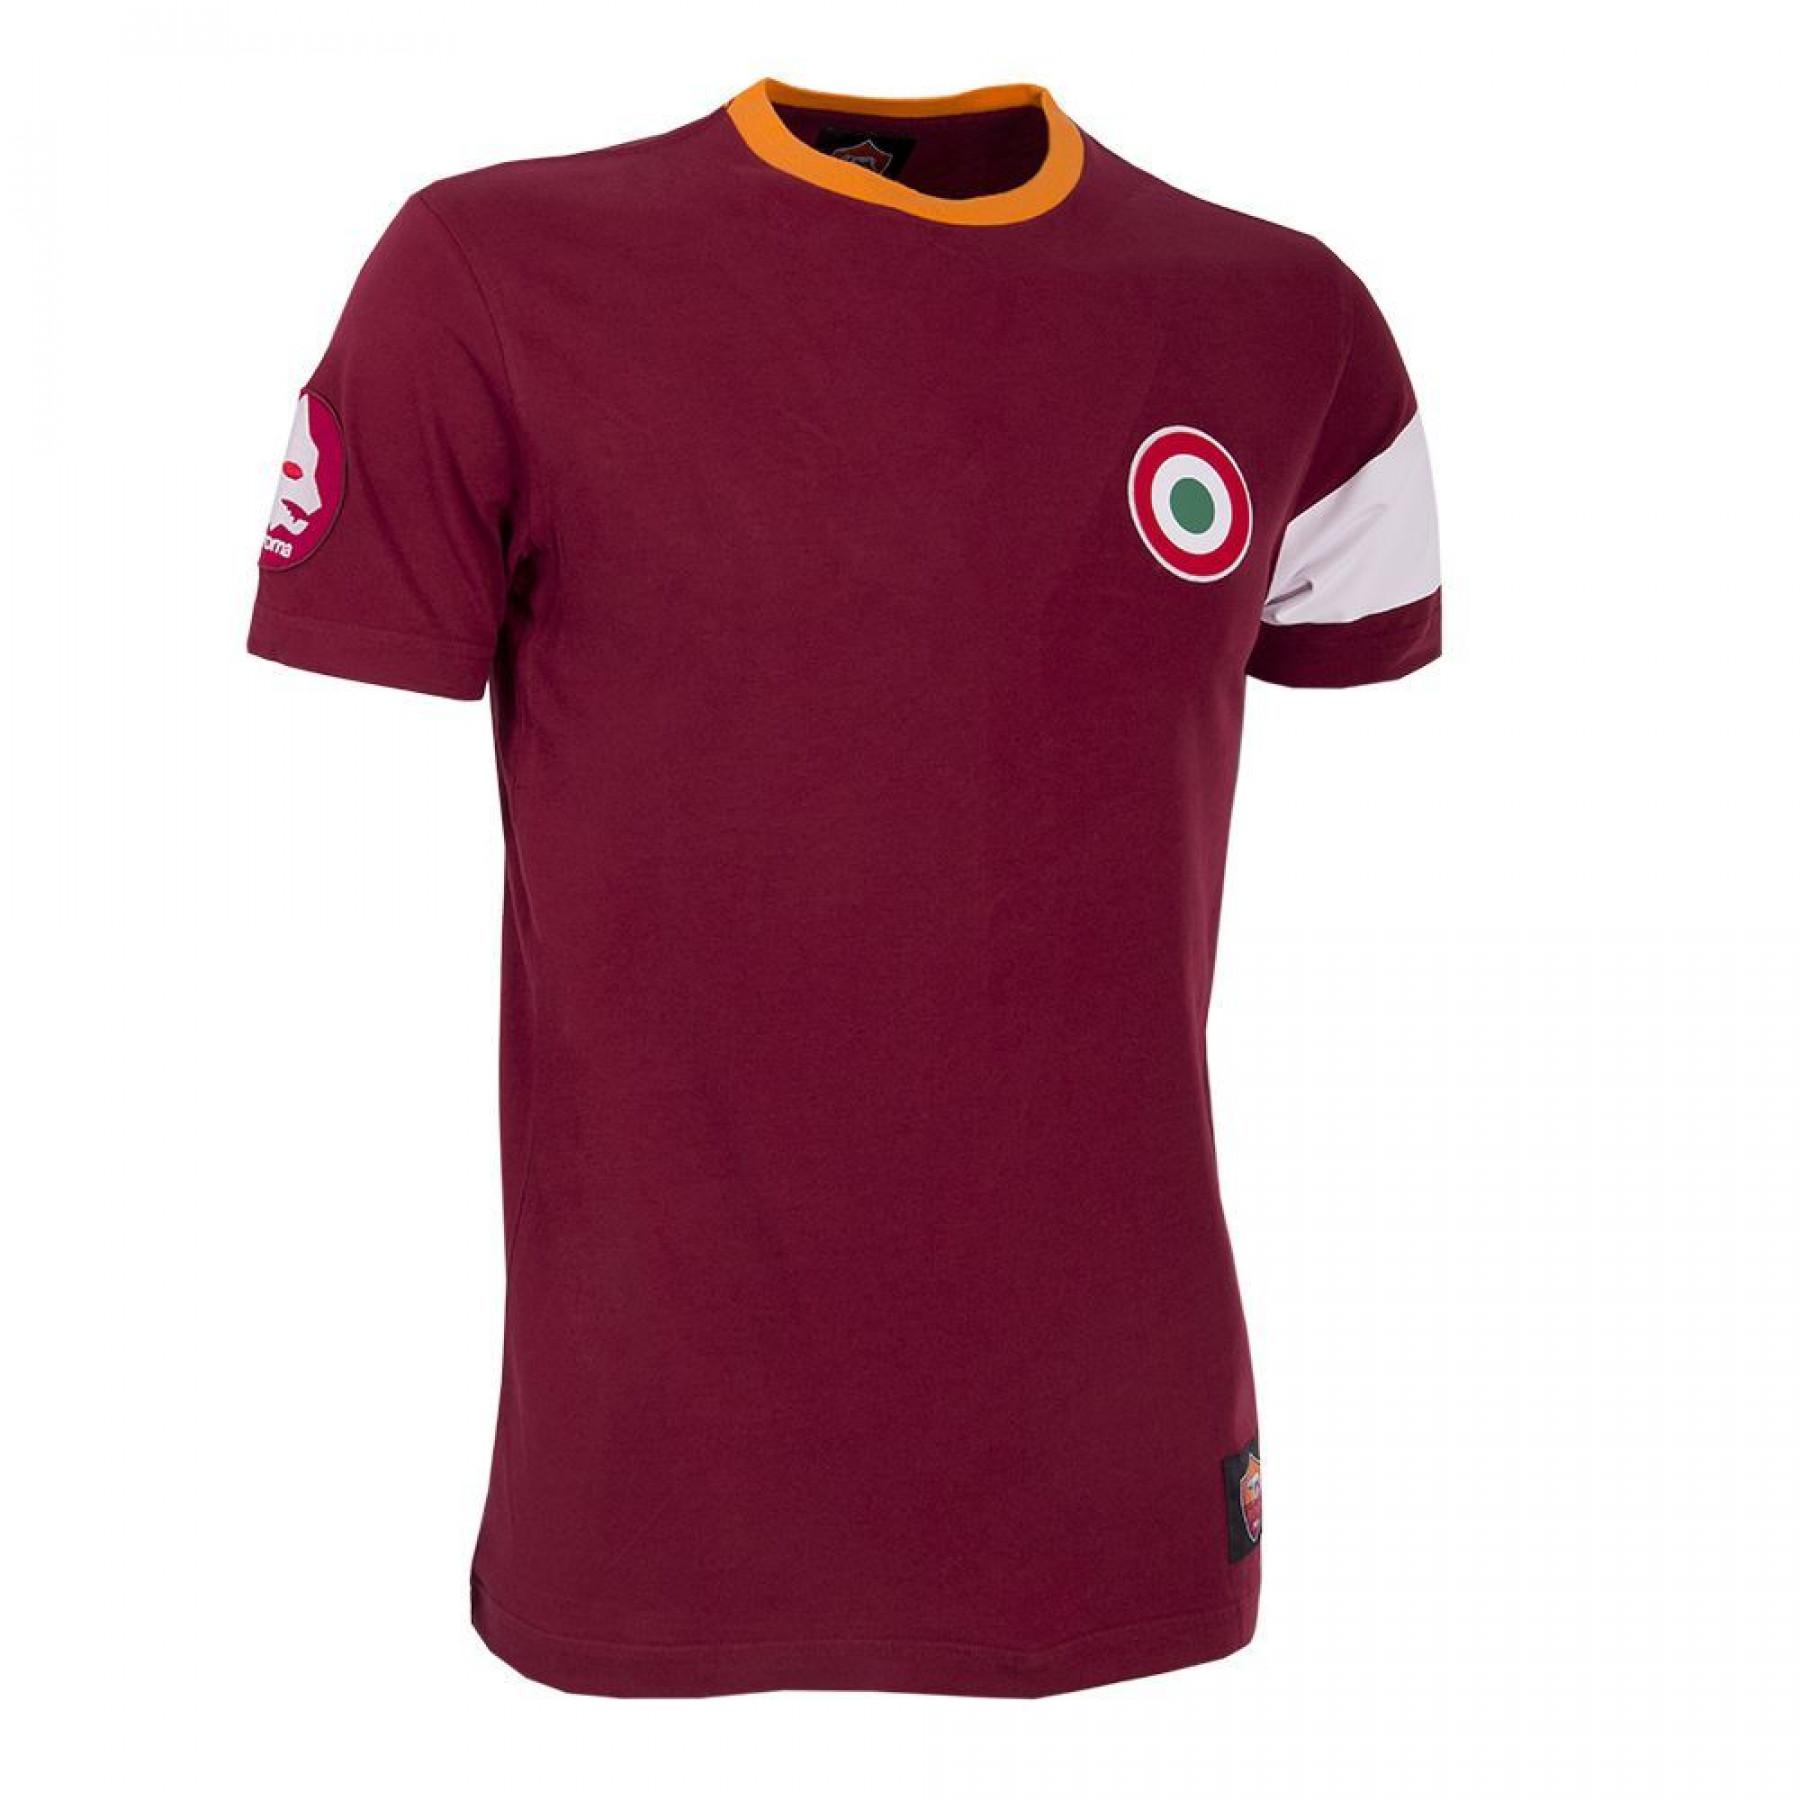 T-shirt do capitão AS Roma